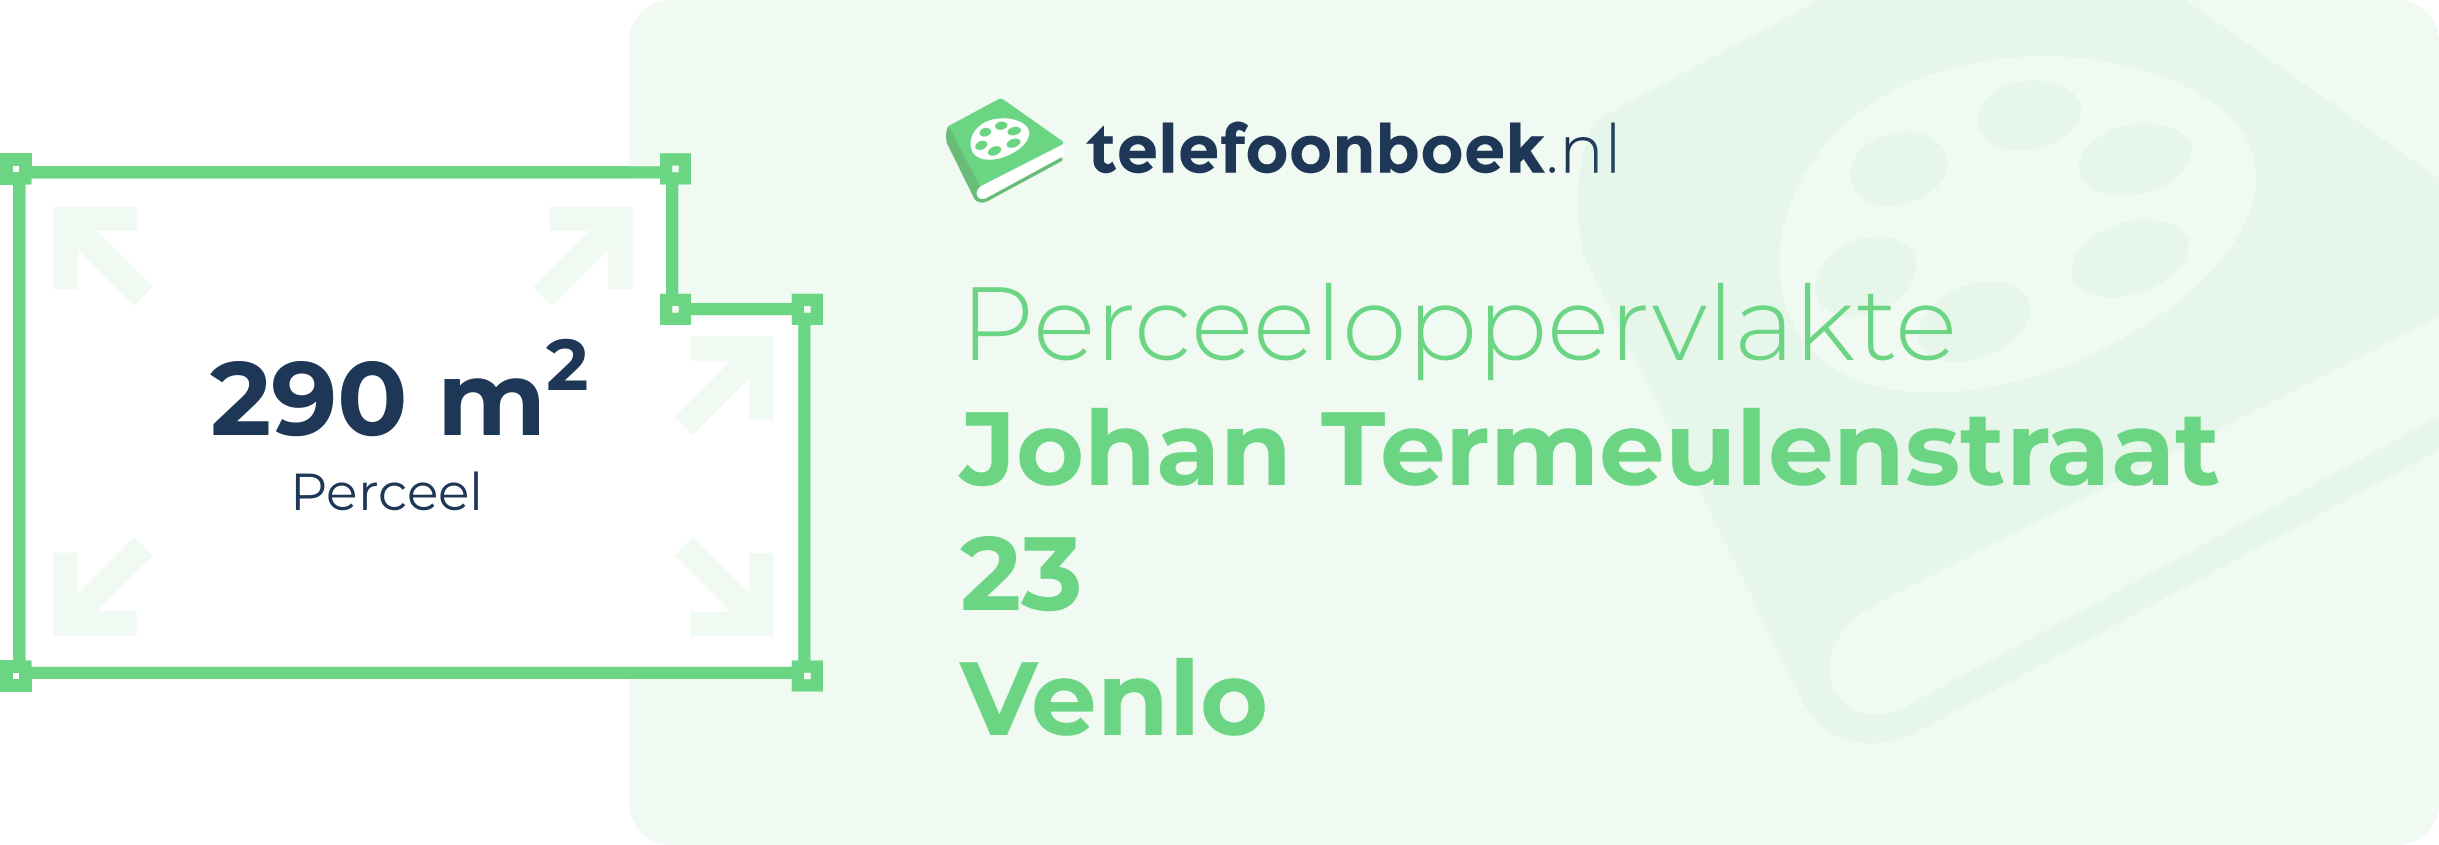 Perceeloppervlakte Johan Termeulenstraat 23 Venlo